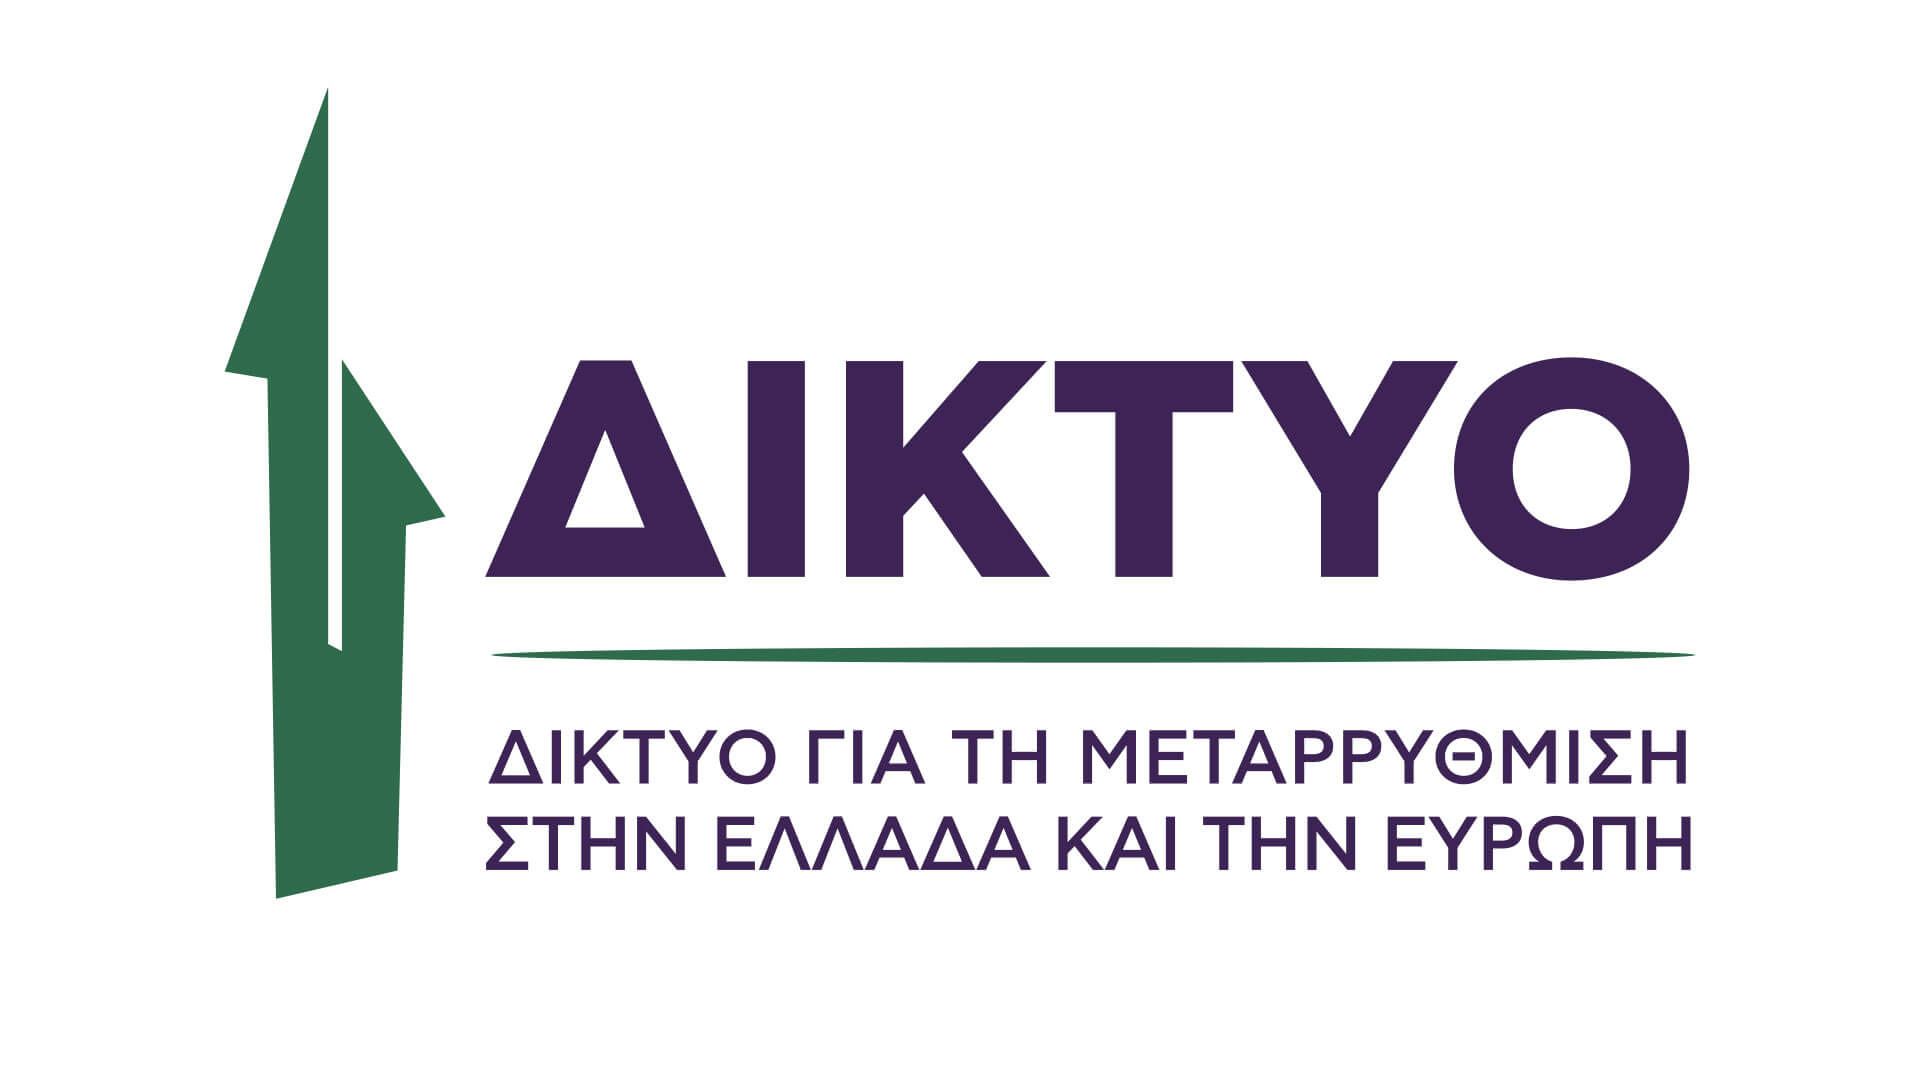 Έρευνα για τον ψηφιακό μετασχηματισμό της Ελληνικής Δικαιοσύνης